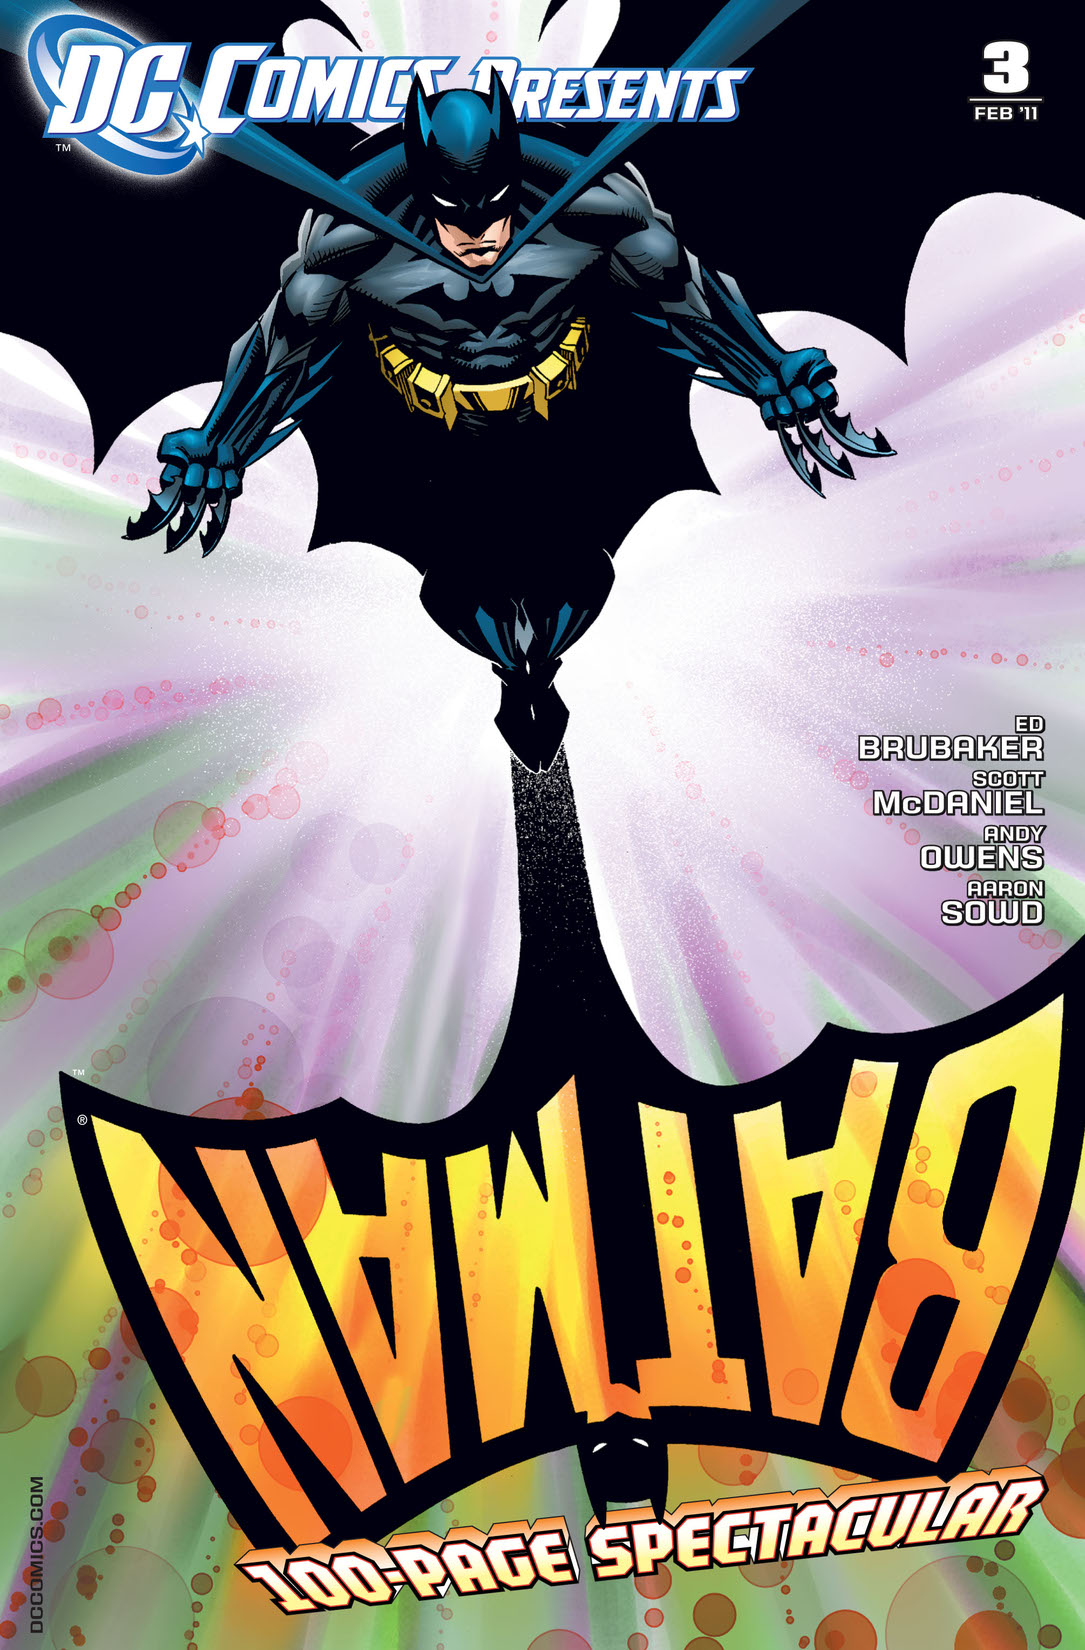 DC Comics Presents: Batman (2010-) #3 preview images